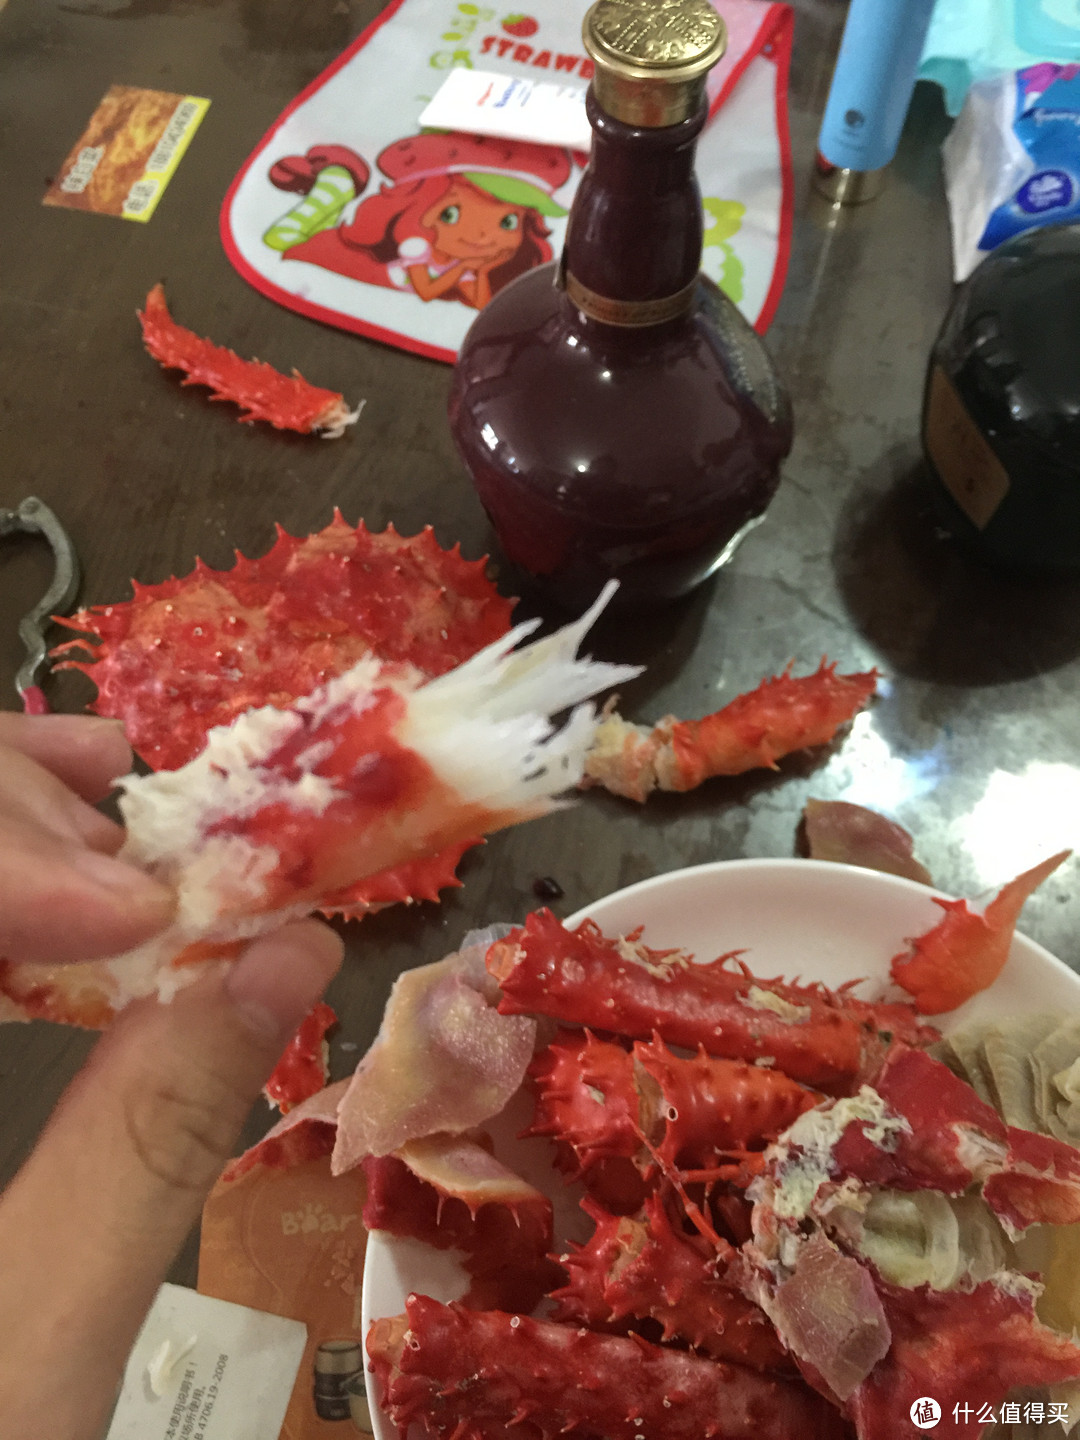 没去过阿拉斯加？那先吃一只阿拉斯加帝王蟹尝尝太平洋的味道吧！